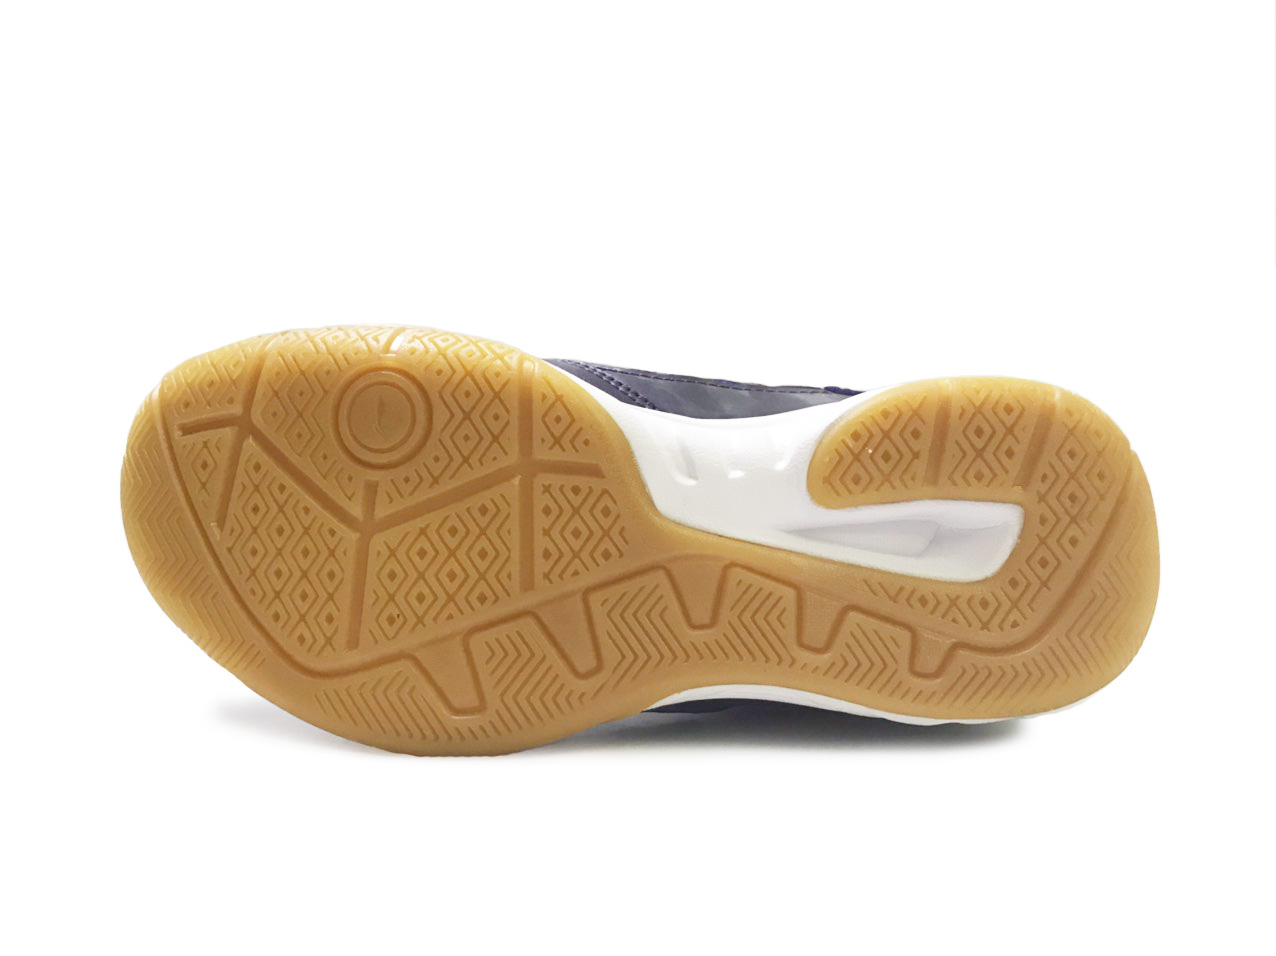 Giày cầu lông Lining dành cho nữ AYTN042-3 giày thể thao chuyên nghiệp-size 36 1/3 - Tặng tất thể thao Bendu